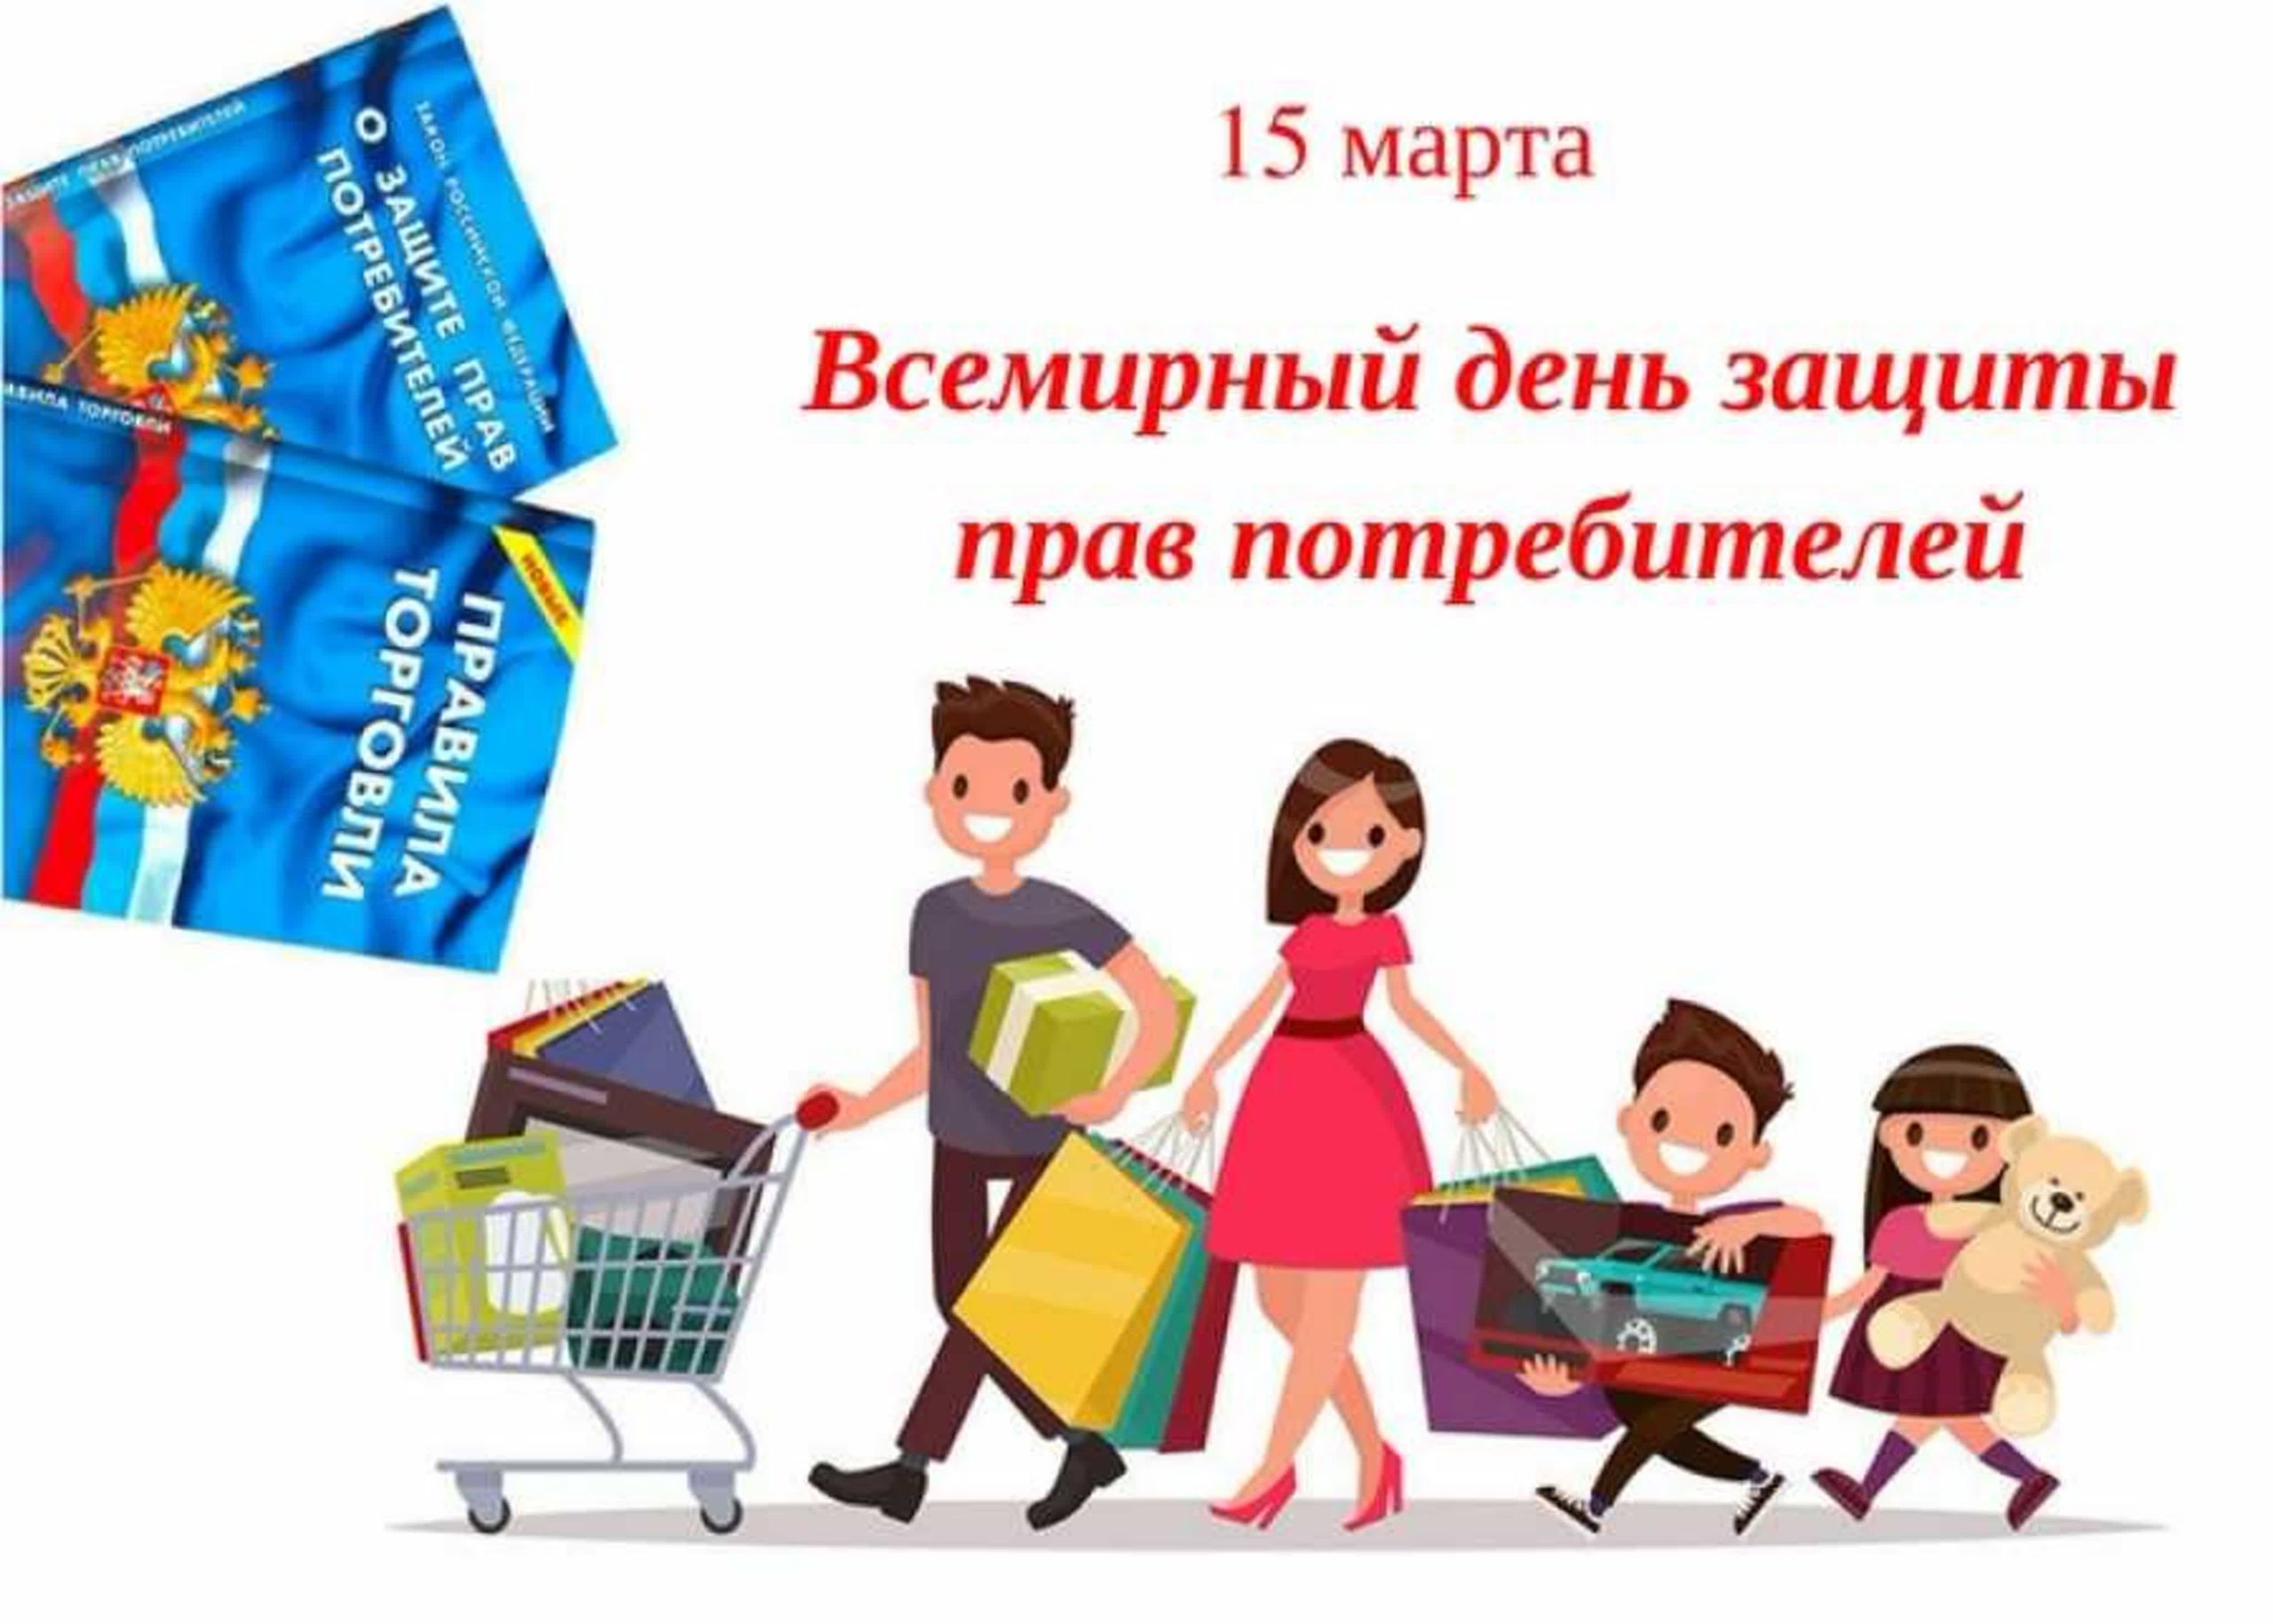 Мероприятия ко дню потребителя. День защиты прав потребителей. Всемирный день прав потребителей.